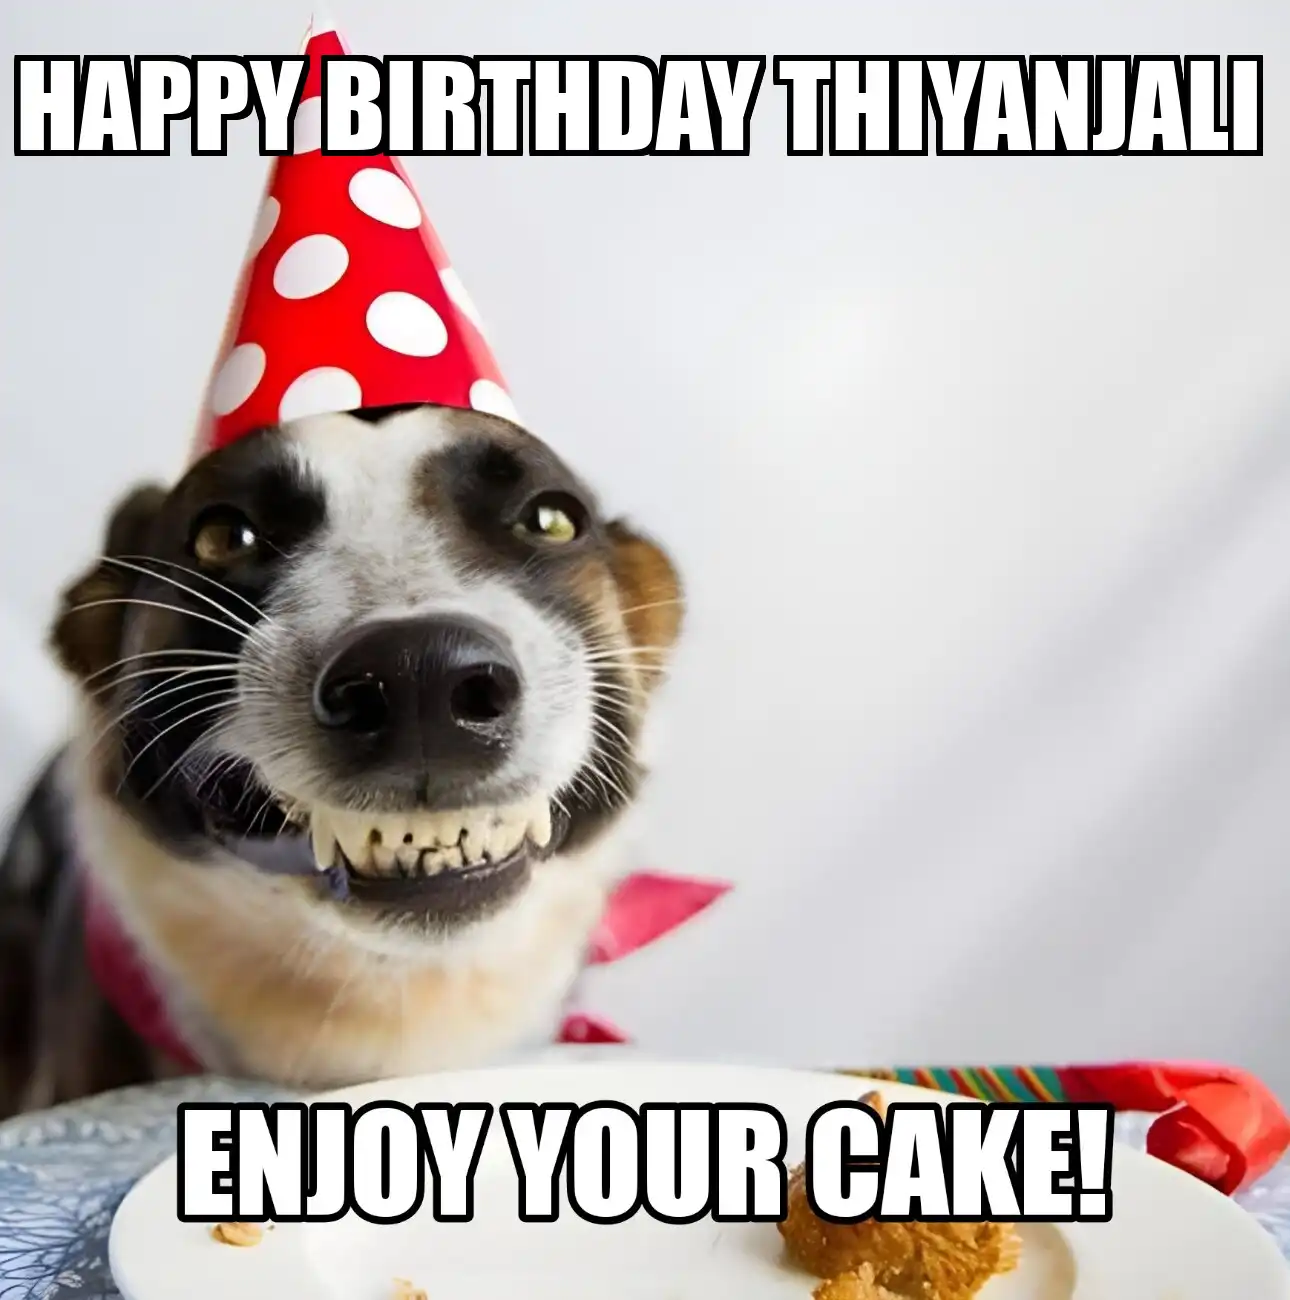 Happy Birthday Thiyanjali Enjoy Your Cake Dog Meme